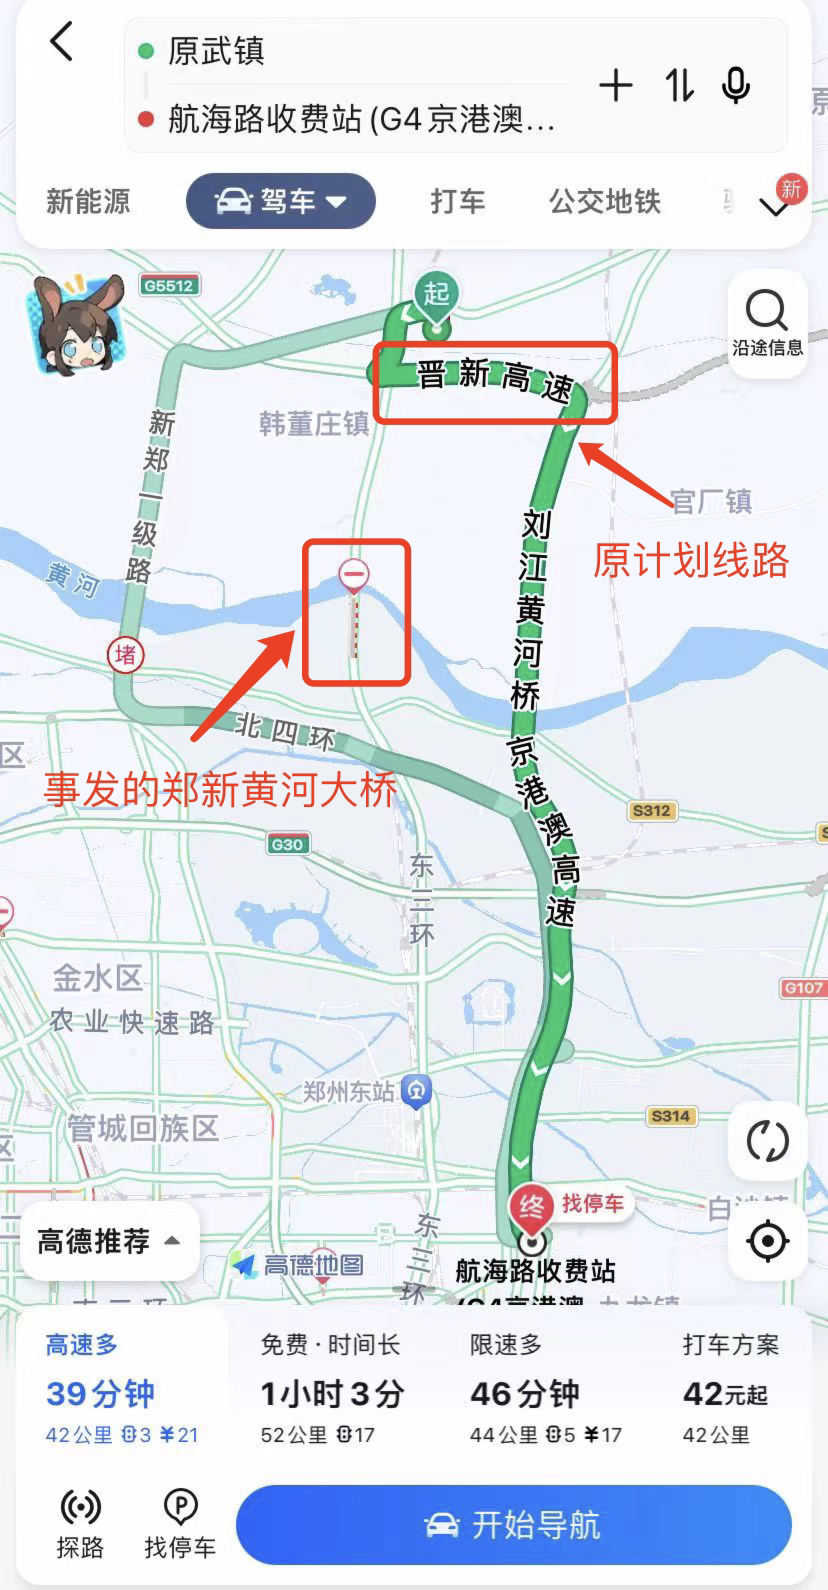 郑新黄河大桥发生交通事故 亲历者称“能见度不足20米”